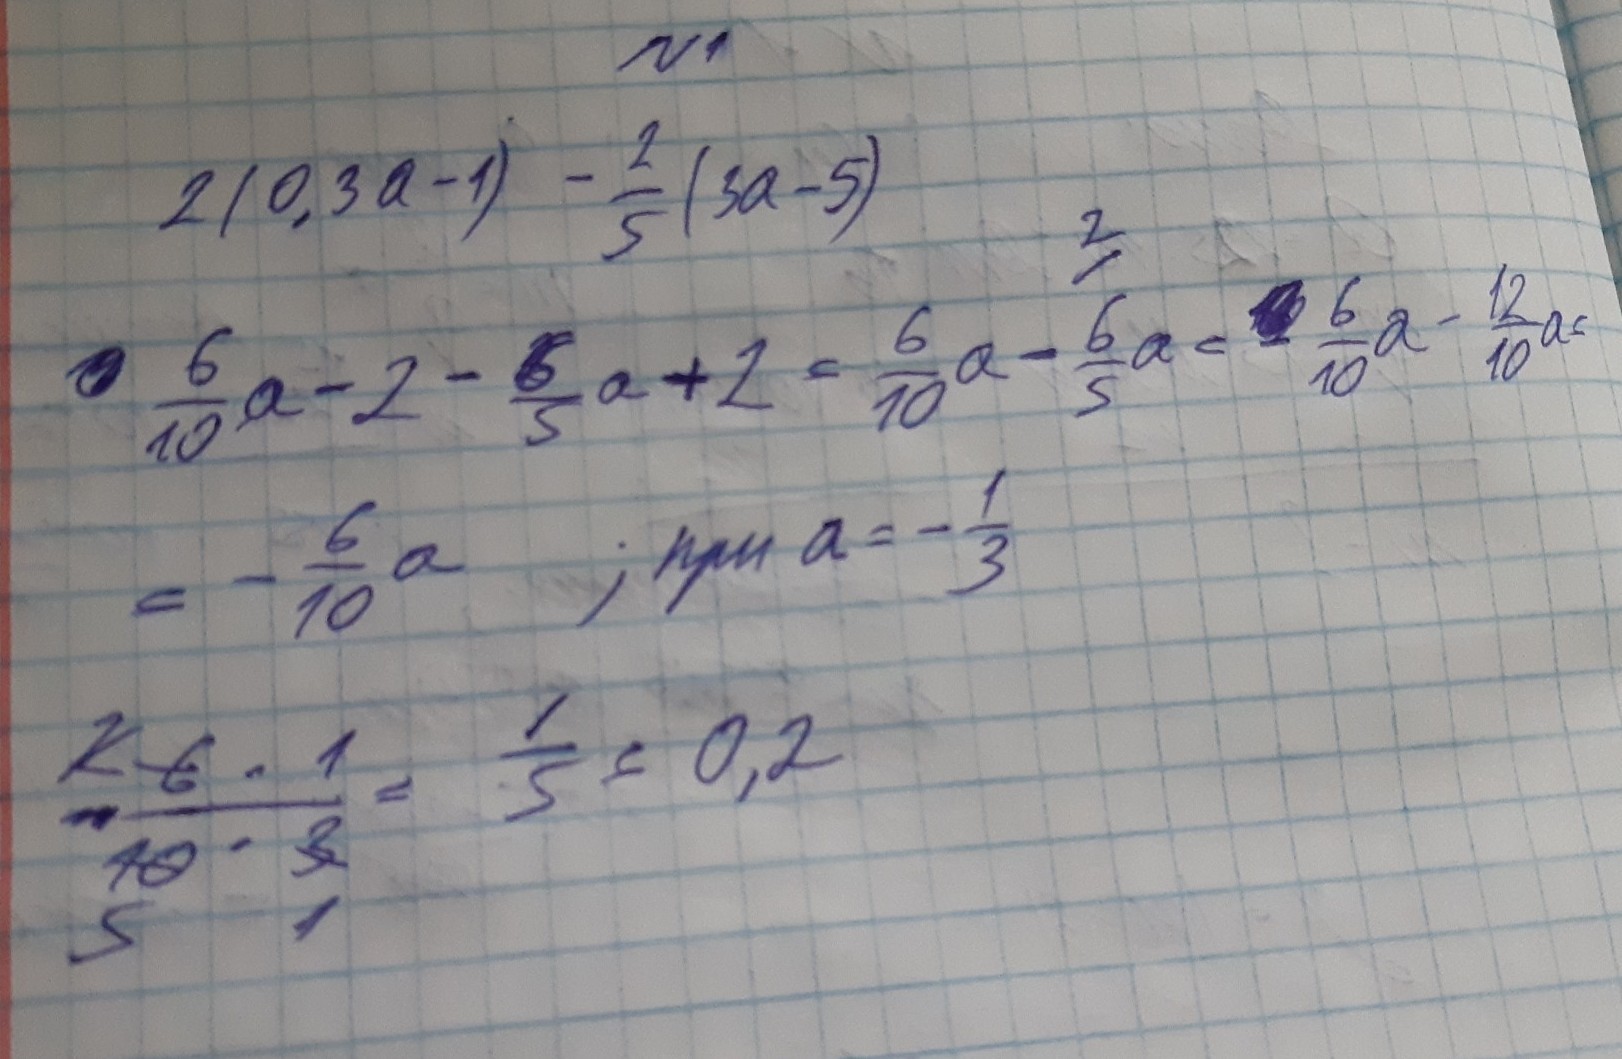 А2 3 64. Что такое 5 1 3 1. (3a-2)2-(a+1)(a+5). 2с1 и 2с3. 1/3 И 2/3.